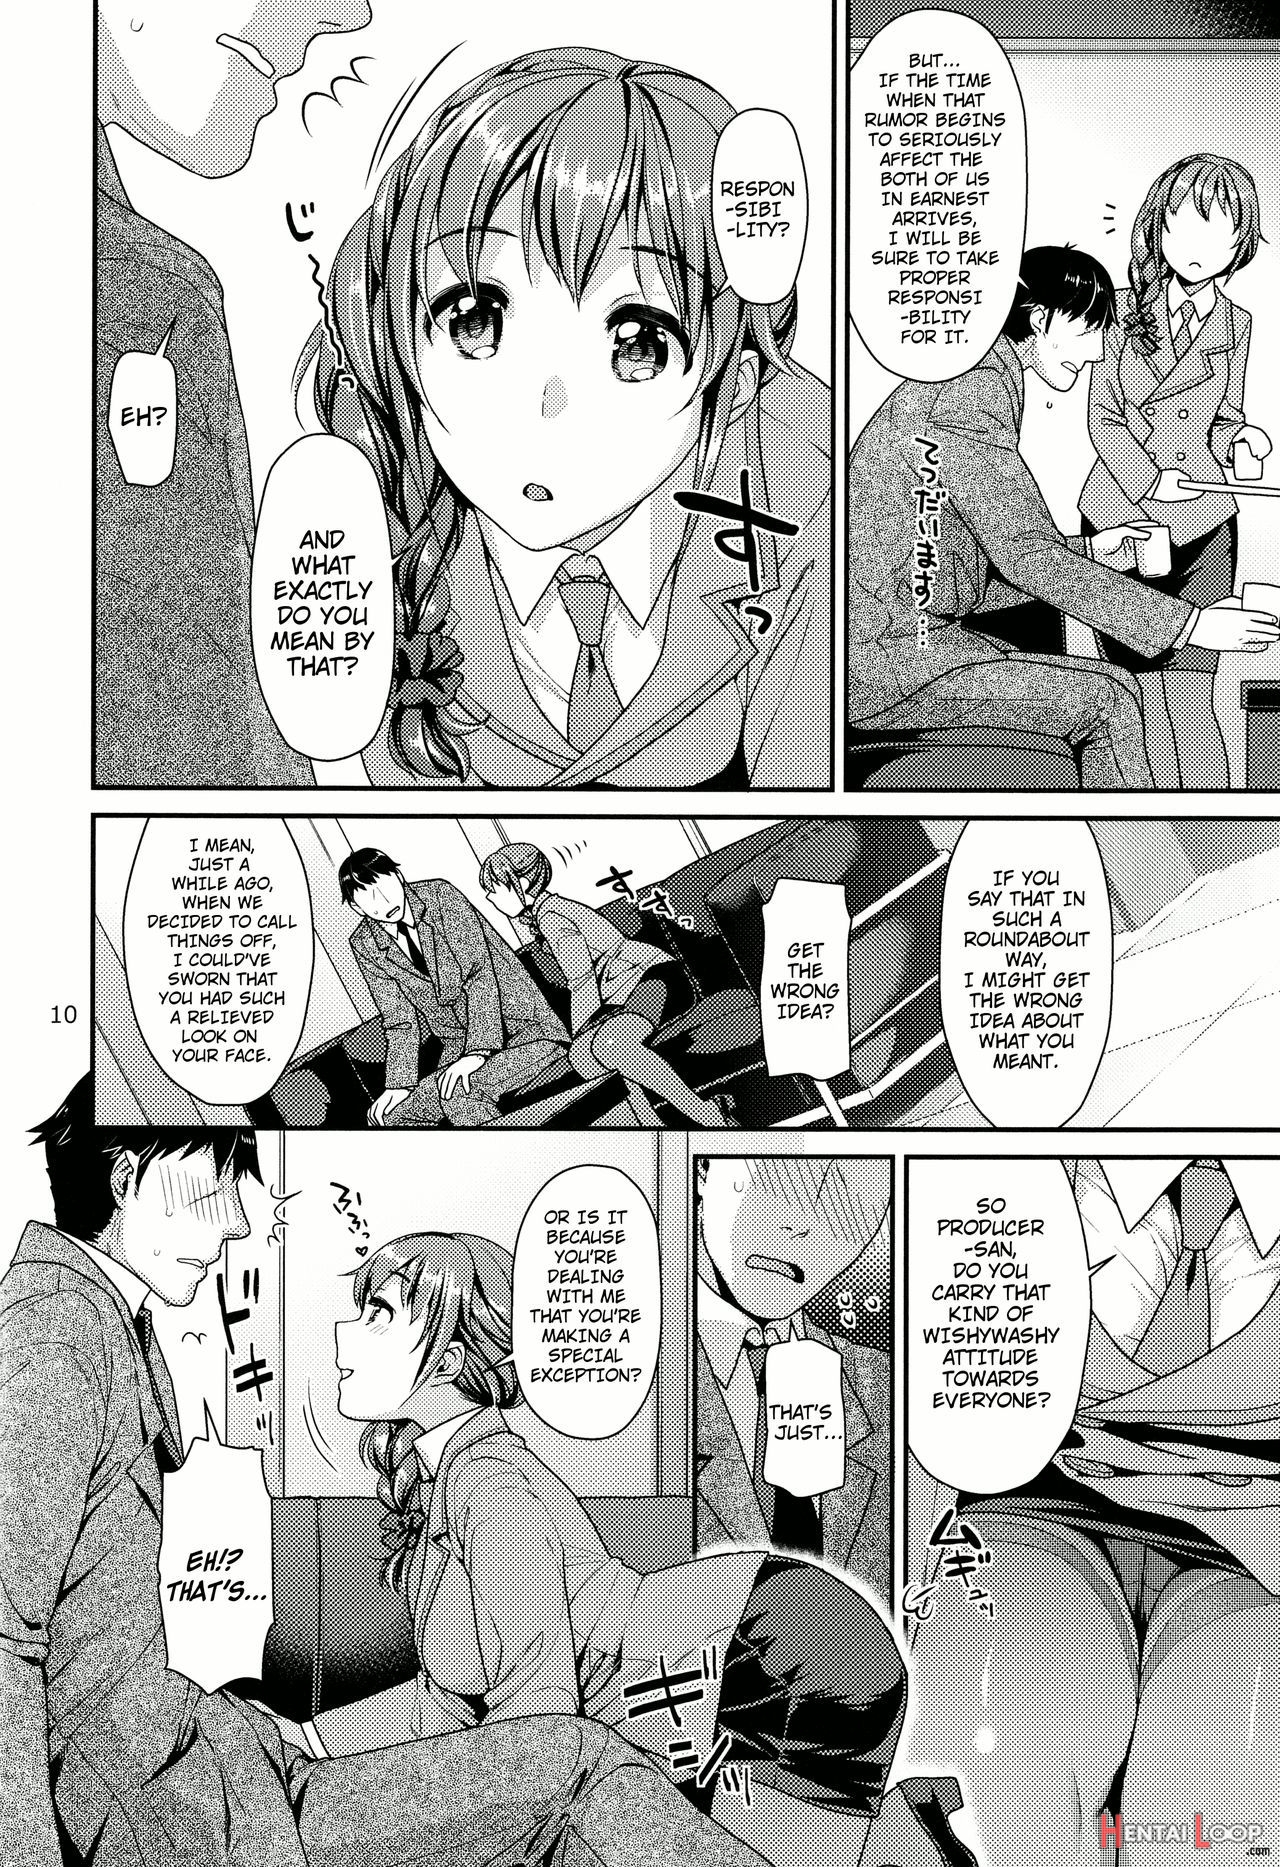 Tsumasakidachi No Koi page 9